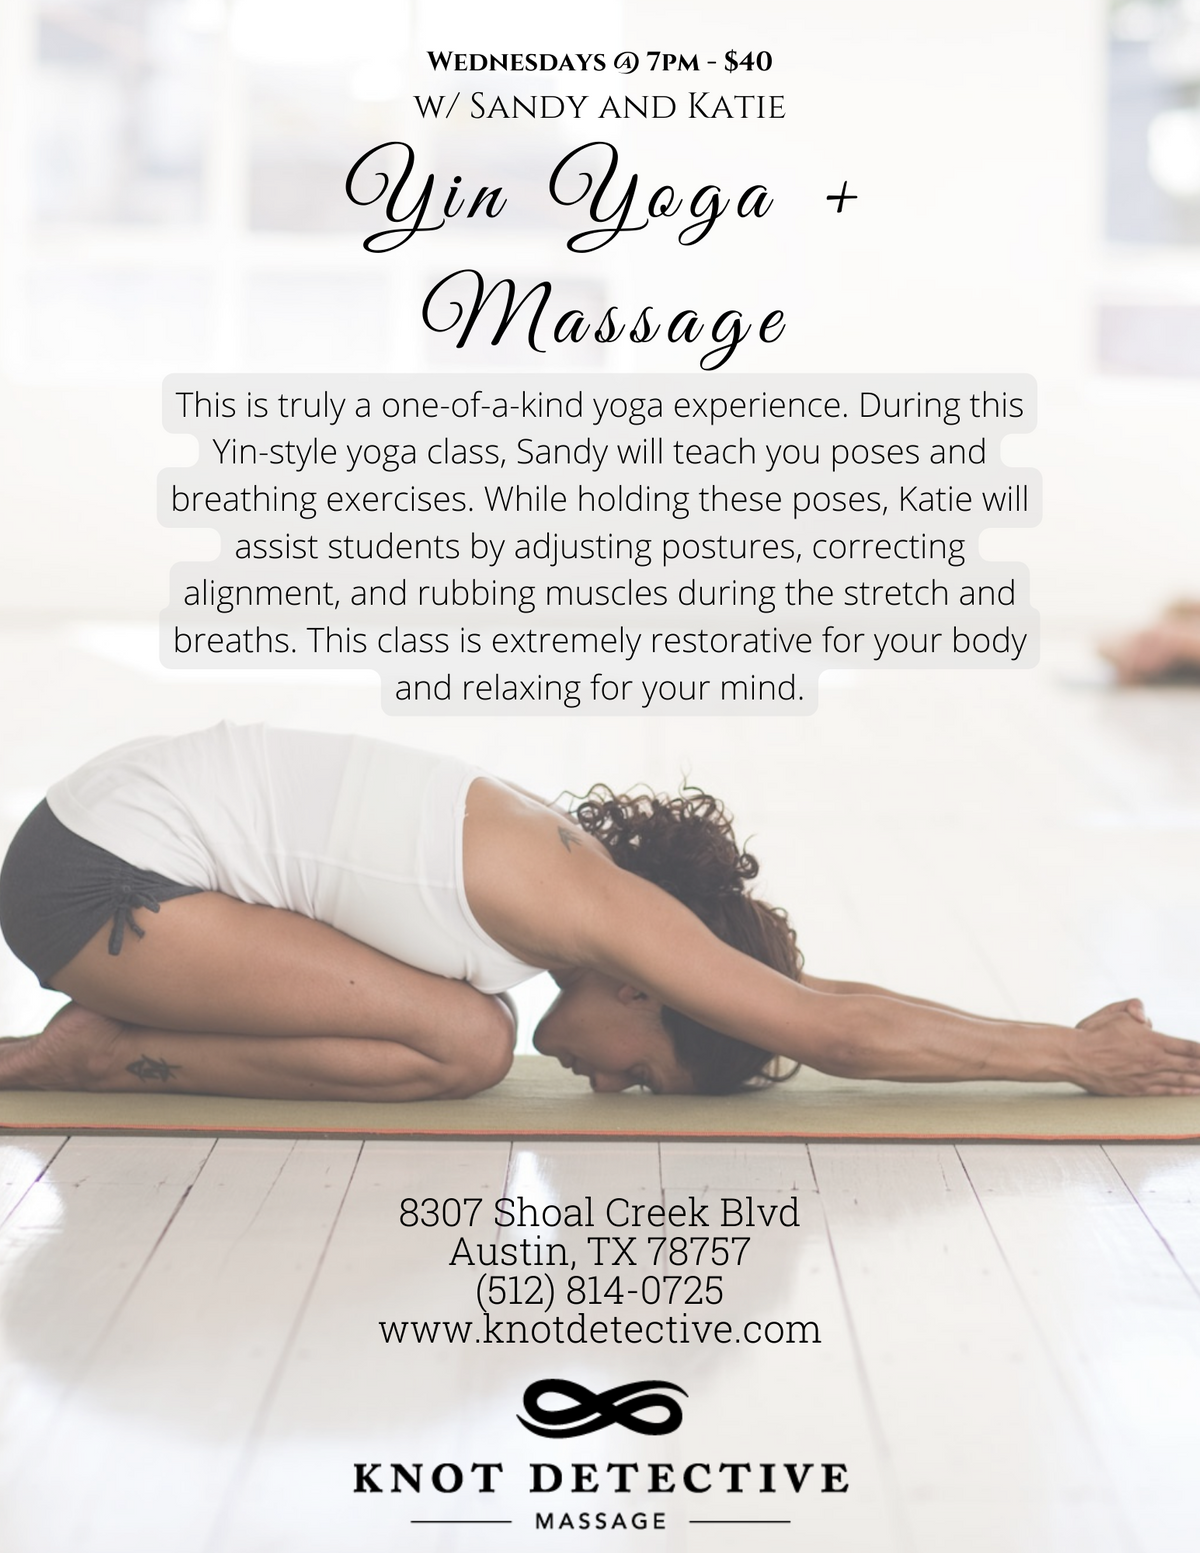 yoga massage flyer.png